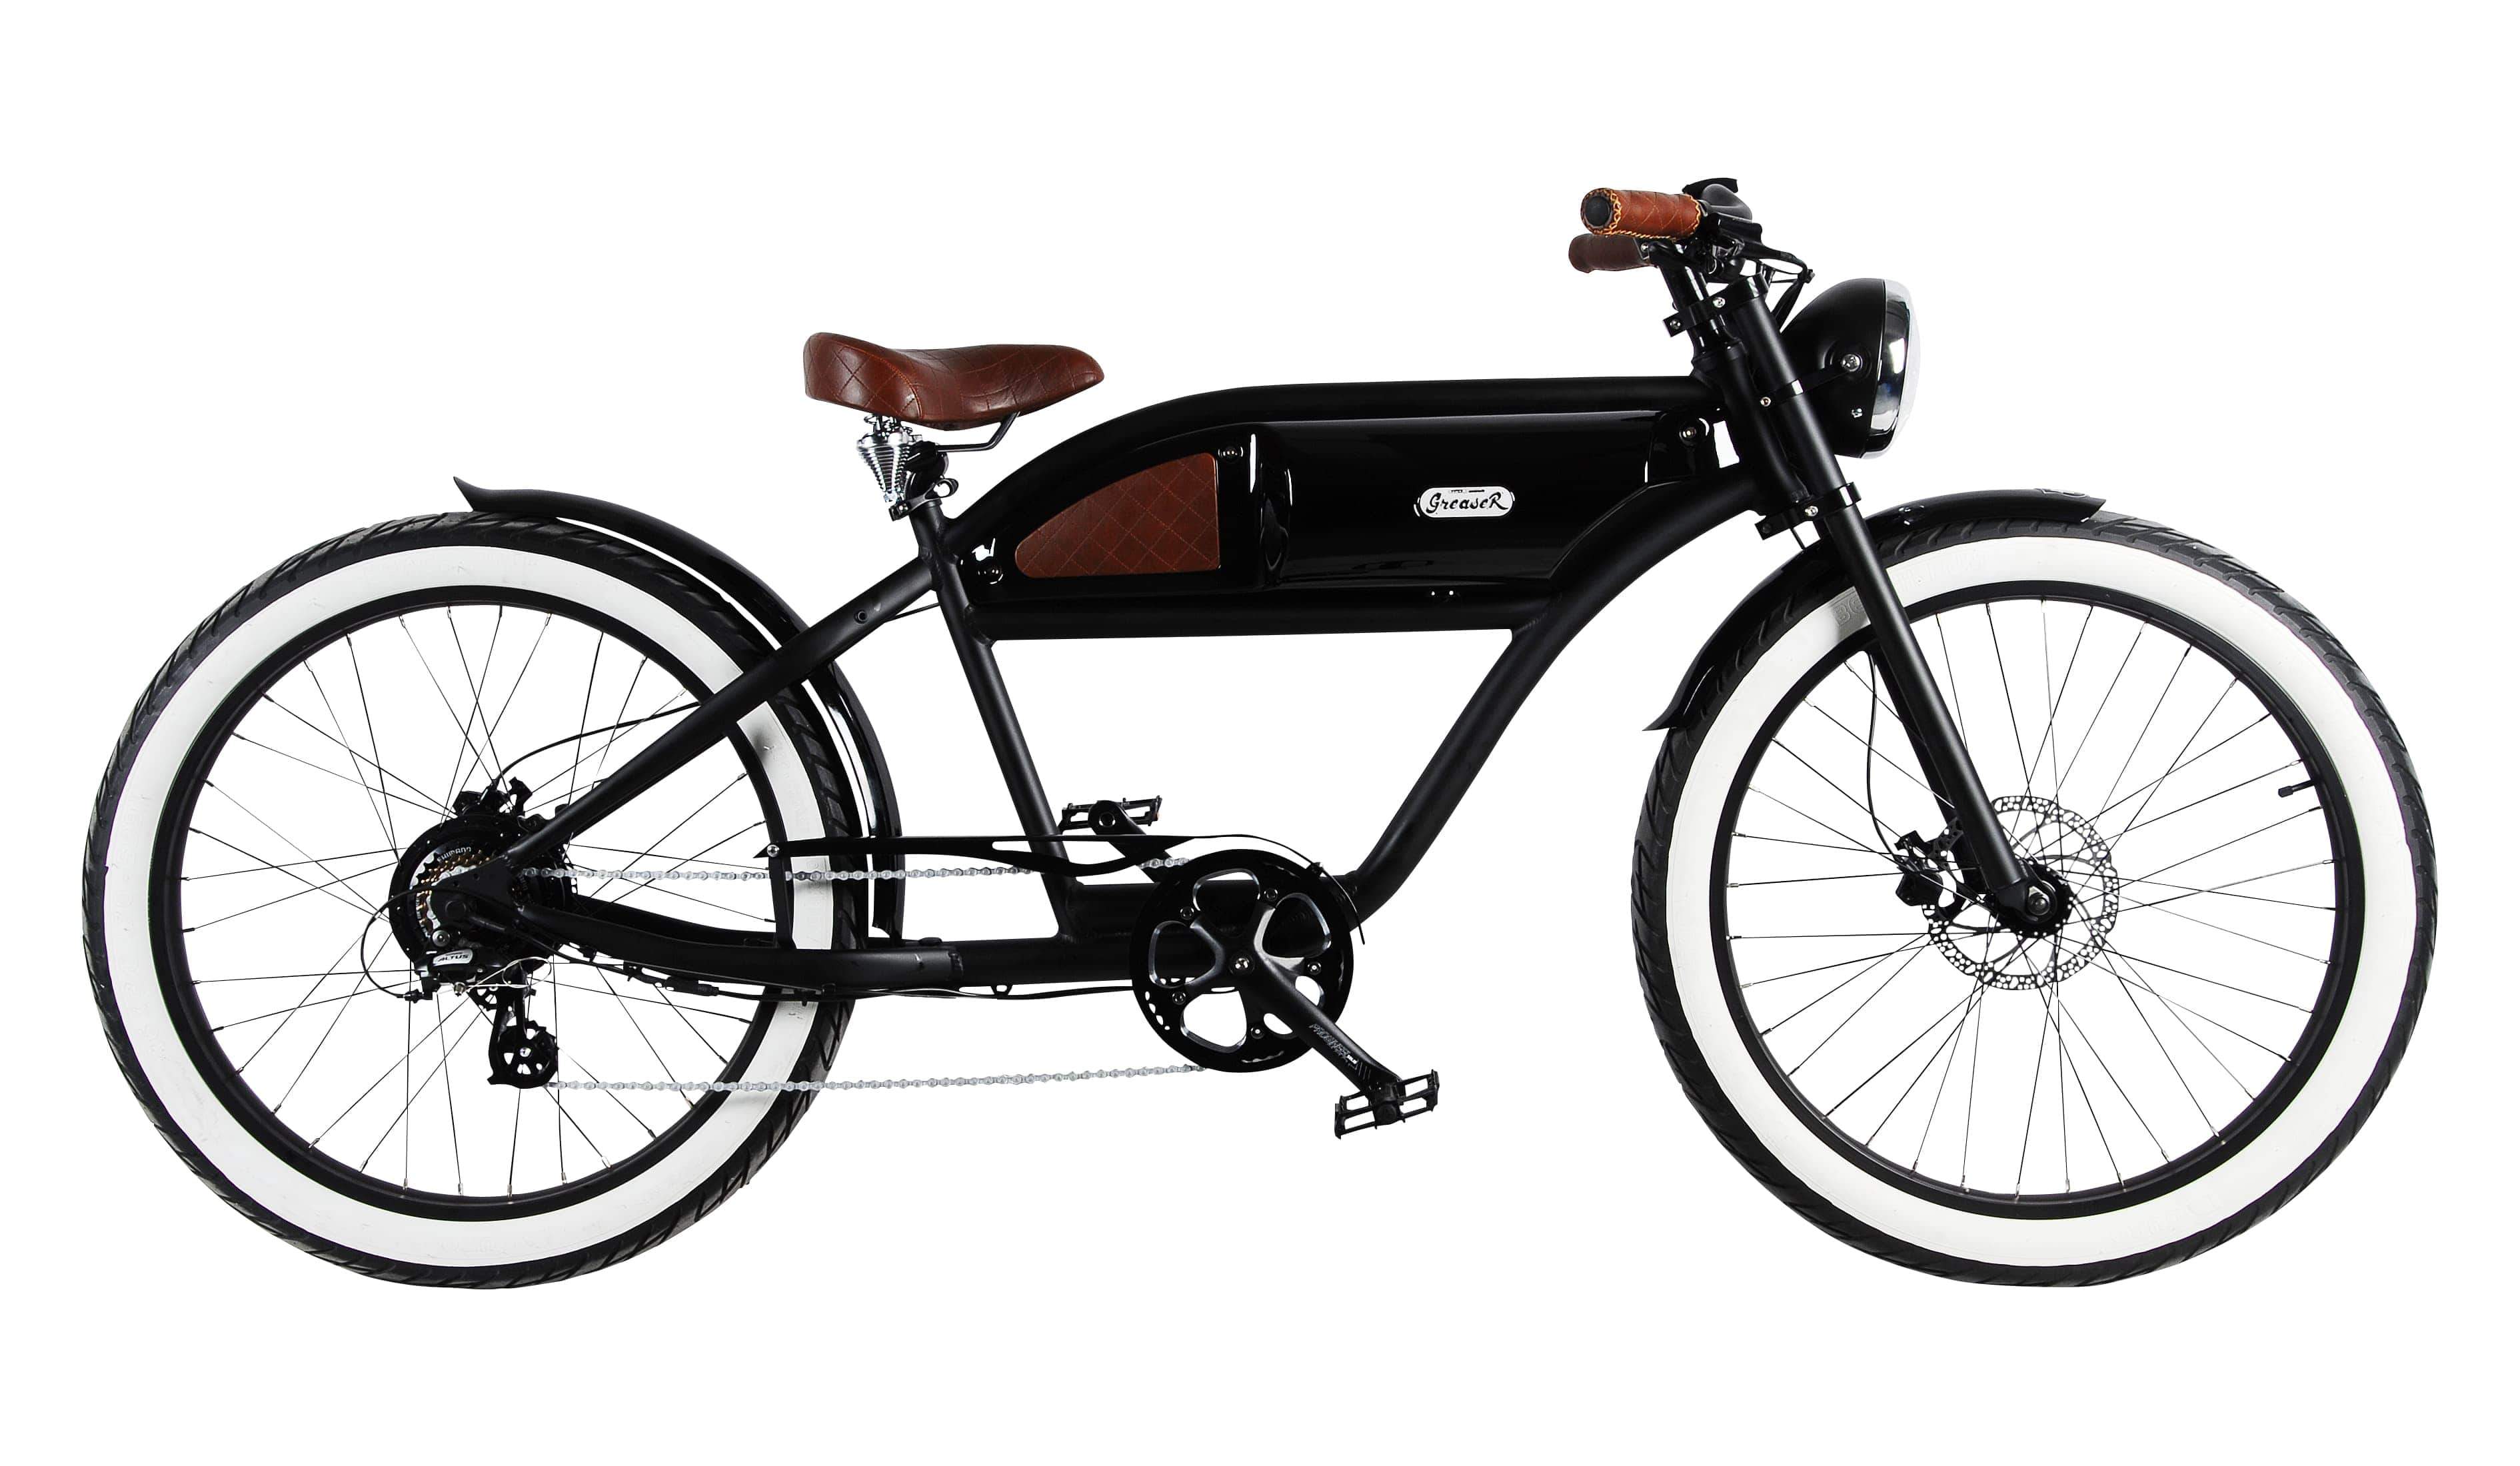 "GREASER" Das Vintage E-Bike in schwarz mit schwarz glänzendem Tank, 500 Watt, Kettenschaltung